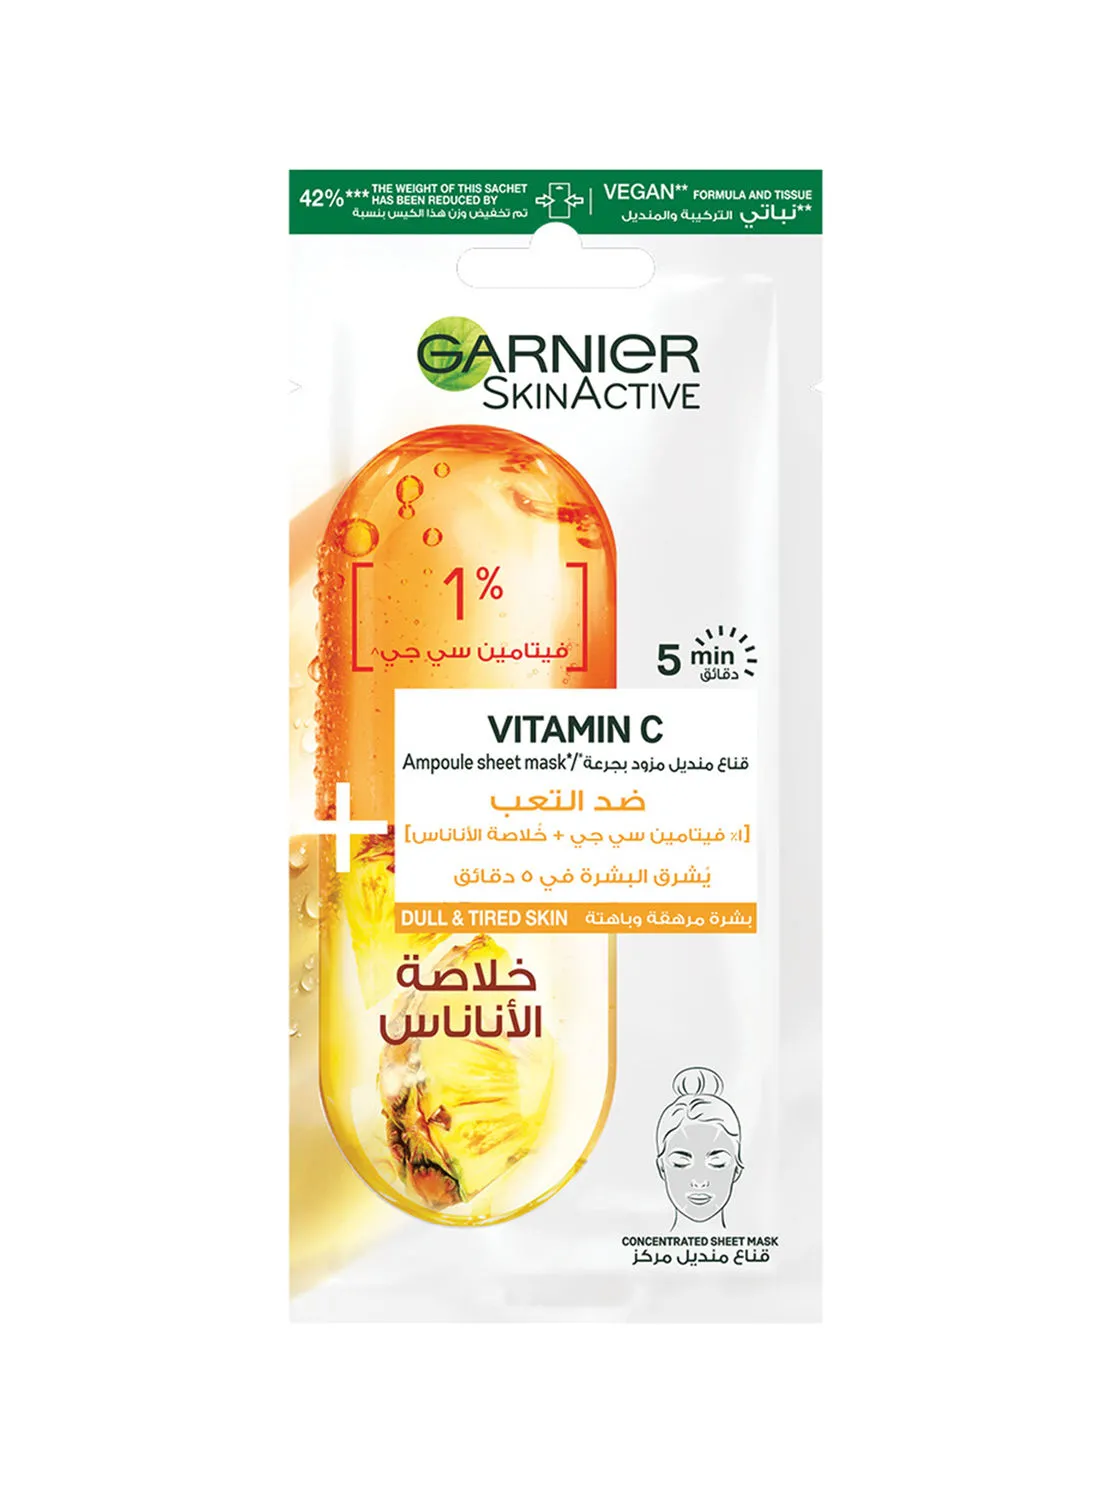 Garnier Skinactive Sheet Mask Ampoule1% Vitamin Cg X Pineapple 15grams